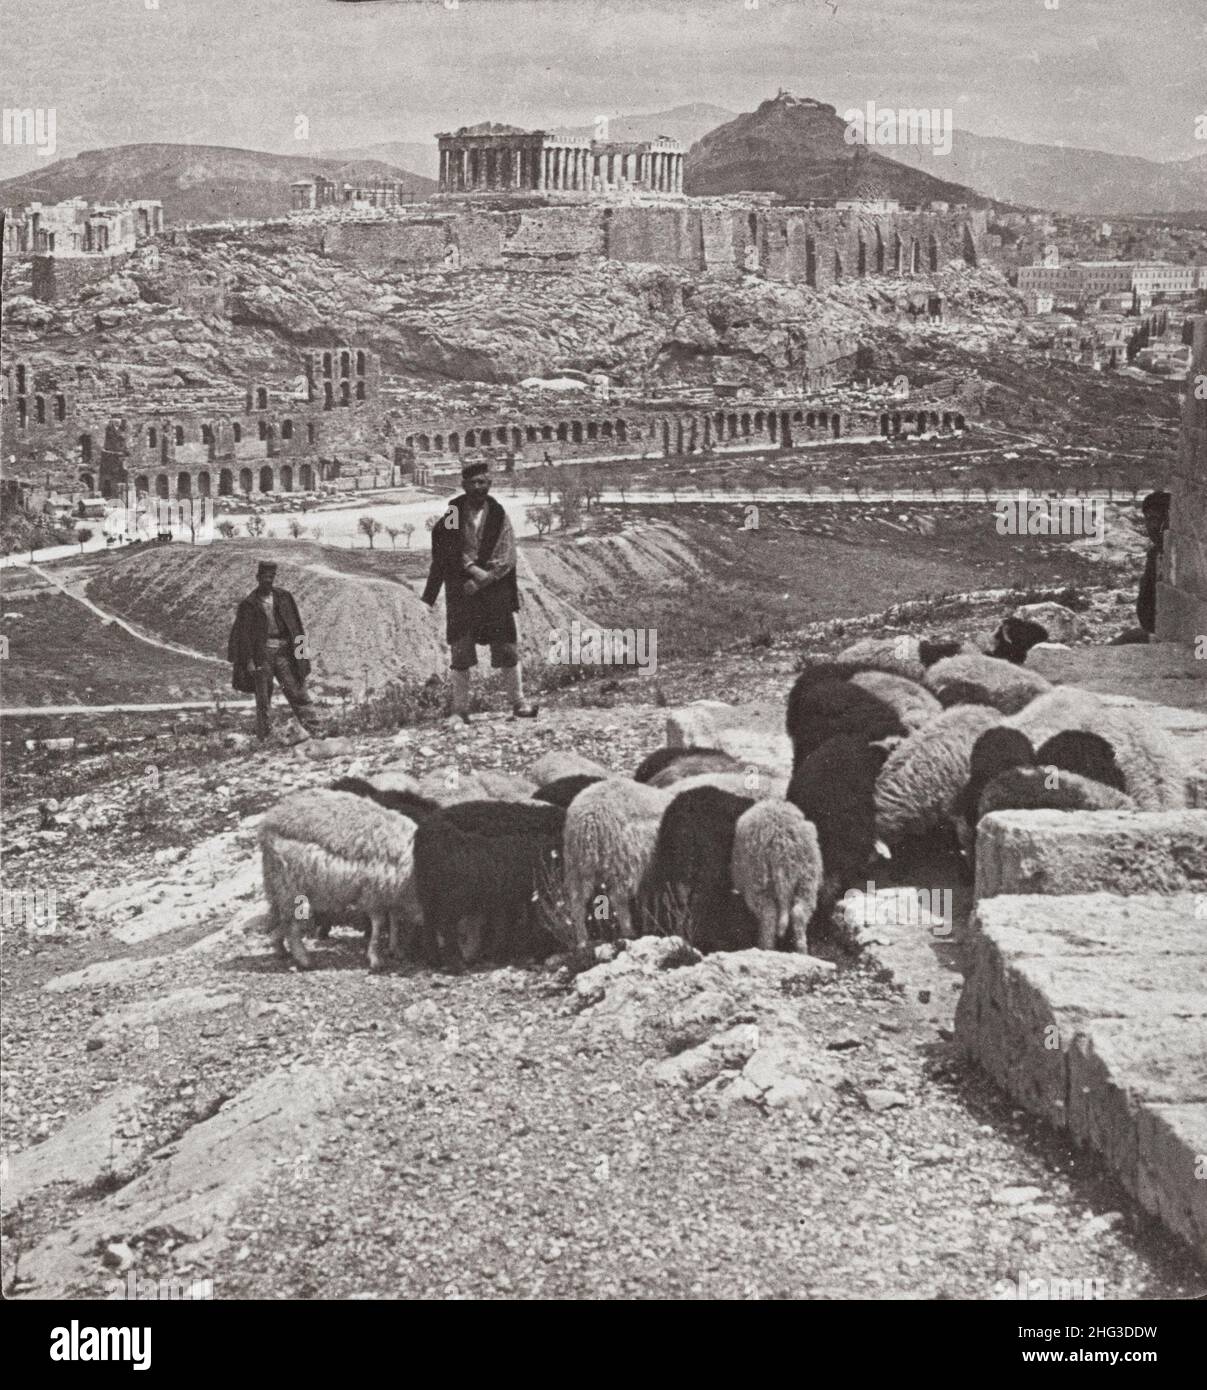 Foto d'epoca dell'Acropoli e di Lykabettos (palazzo reale a destra), Atene, Grecia. 1907 la fotografia mostra mandria di pecore al pascolo e due uomini standin Foto Stock